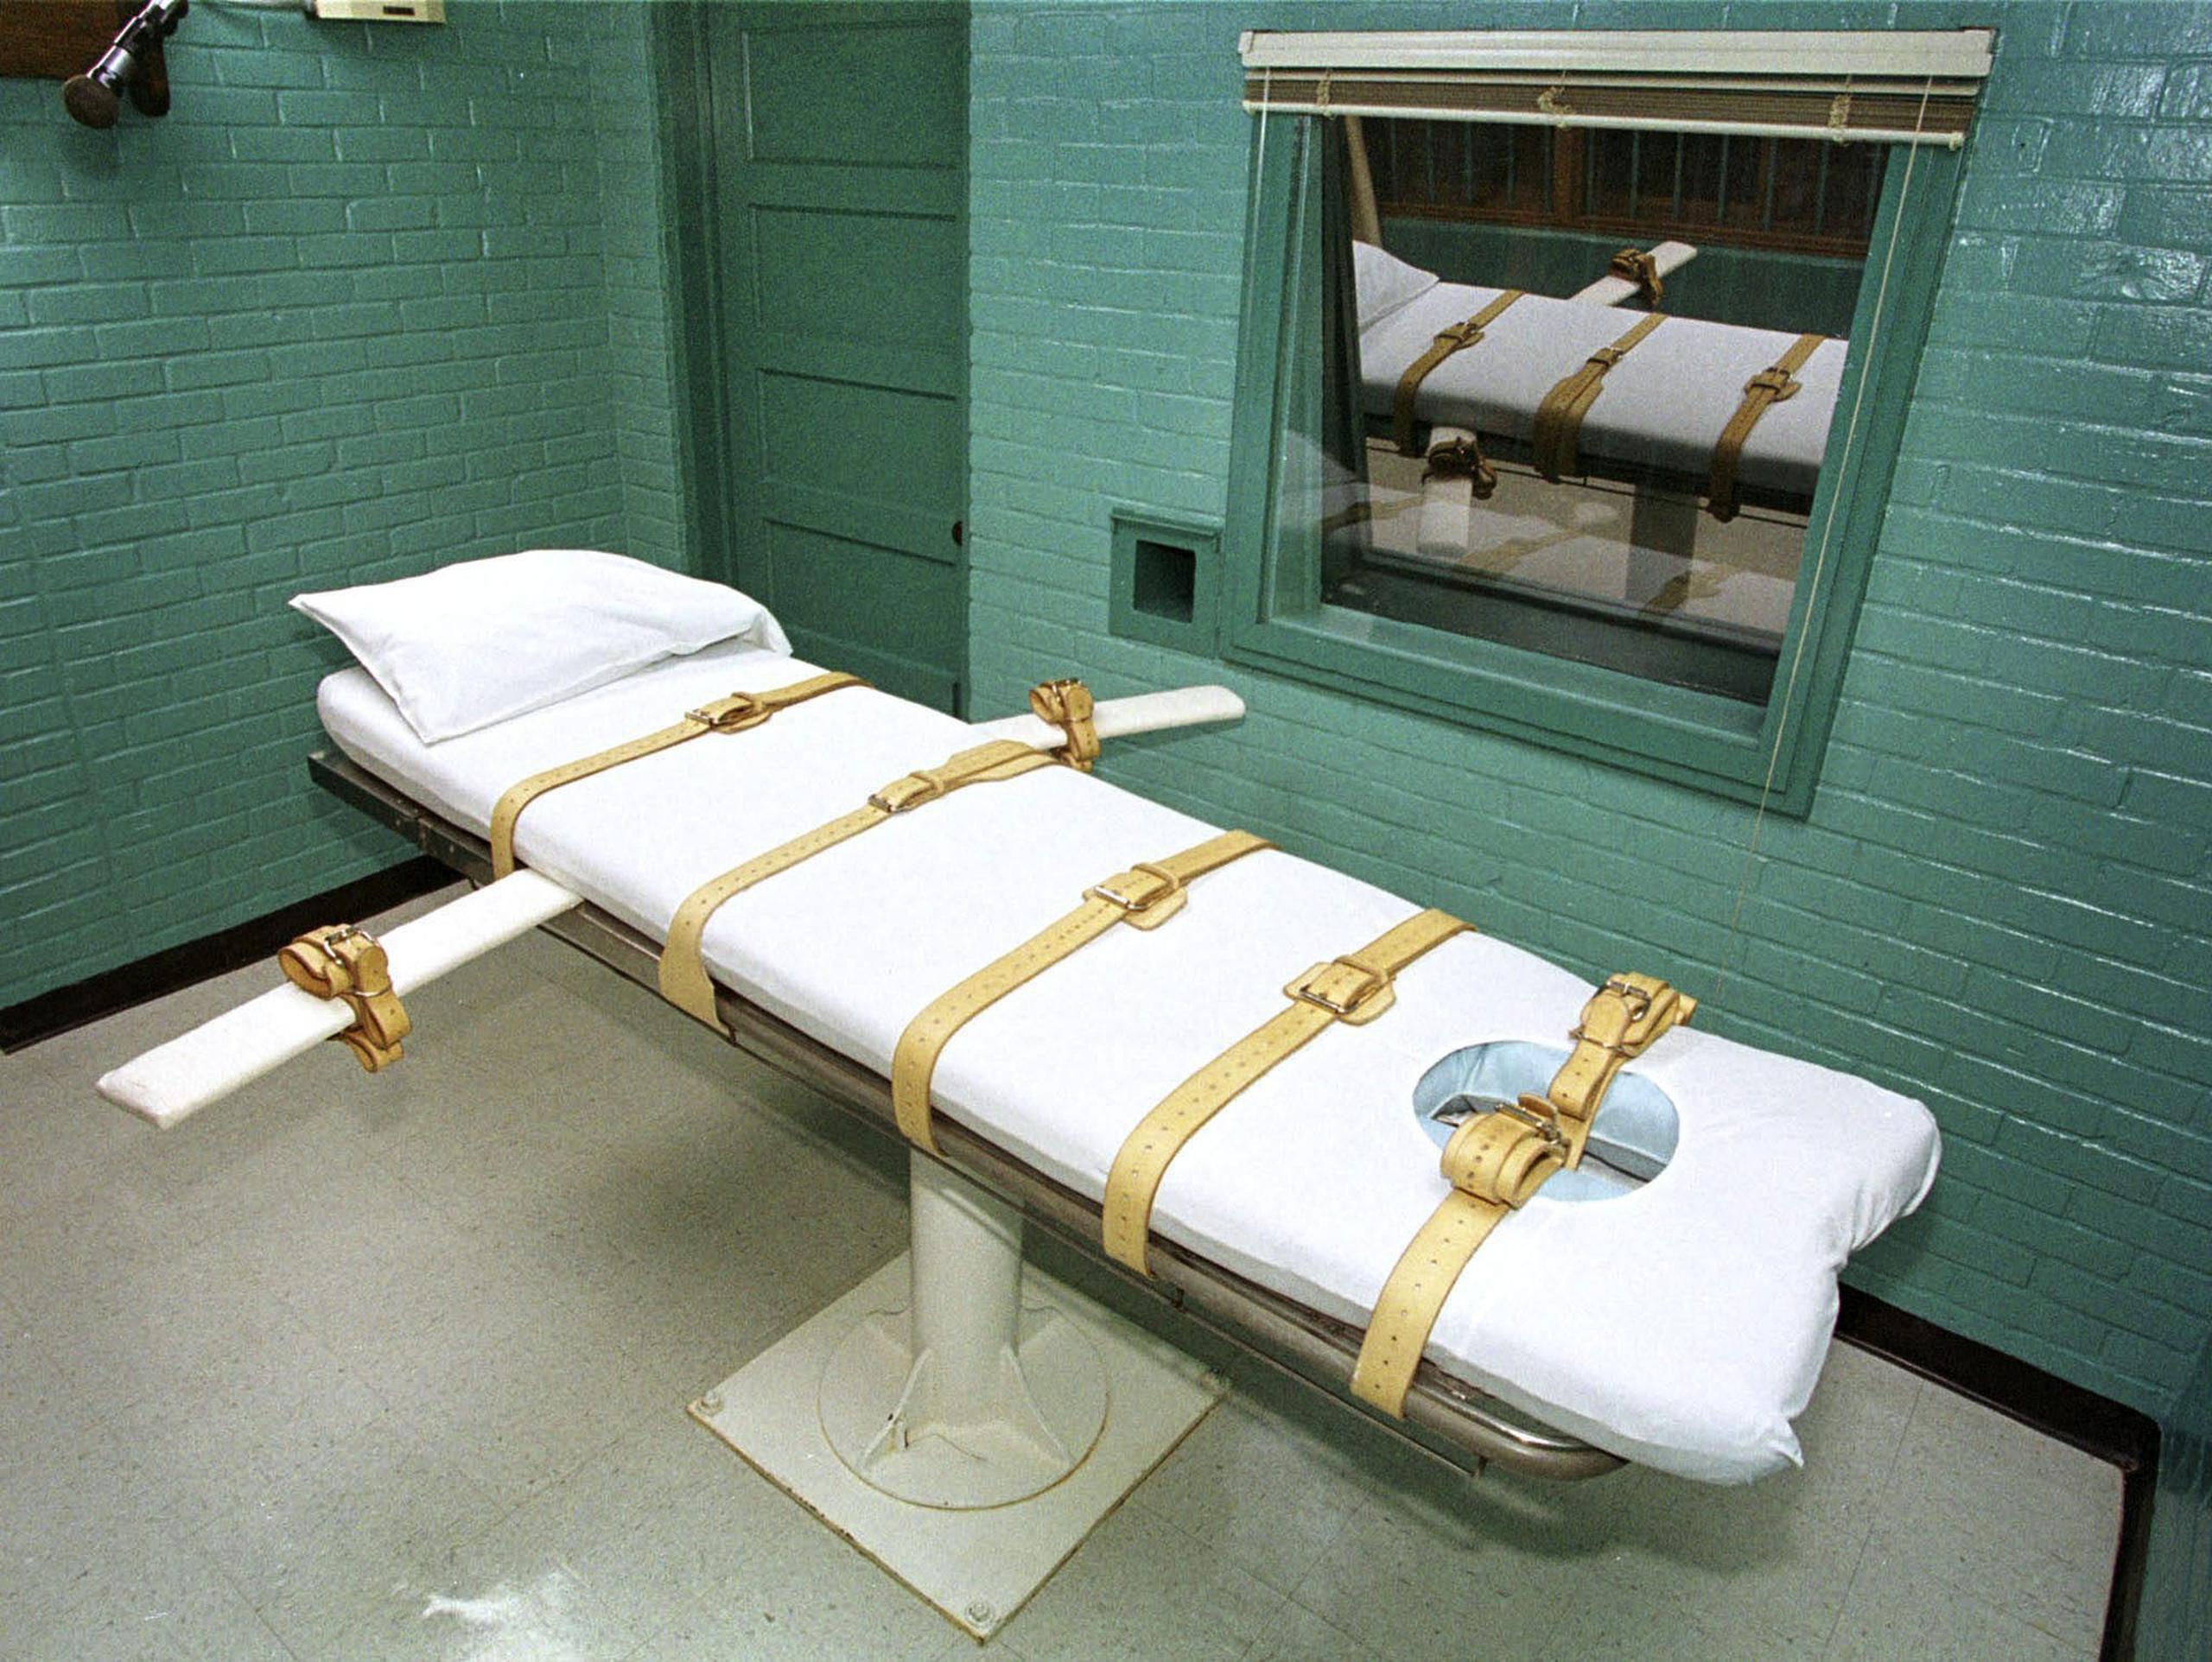 De acuerdo a las actuales leyes de Florida, se requiere unanimidad del jurado para que un juez dictamine la pena de muerte, lo cual va en línea con lo que establece la Corte Suprema de EE.UU. (EFE/Paul Buck)